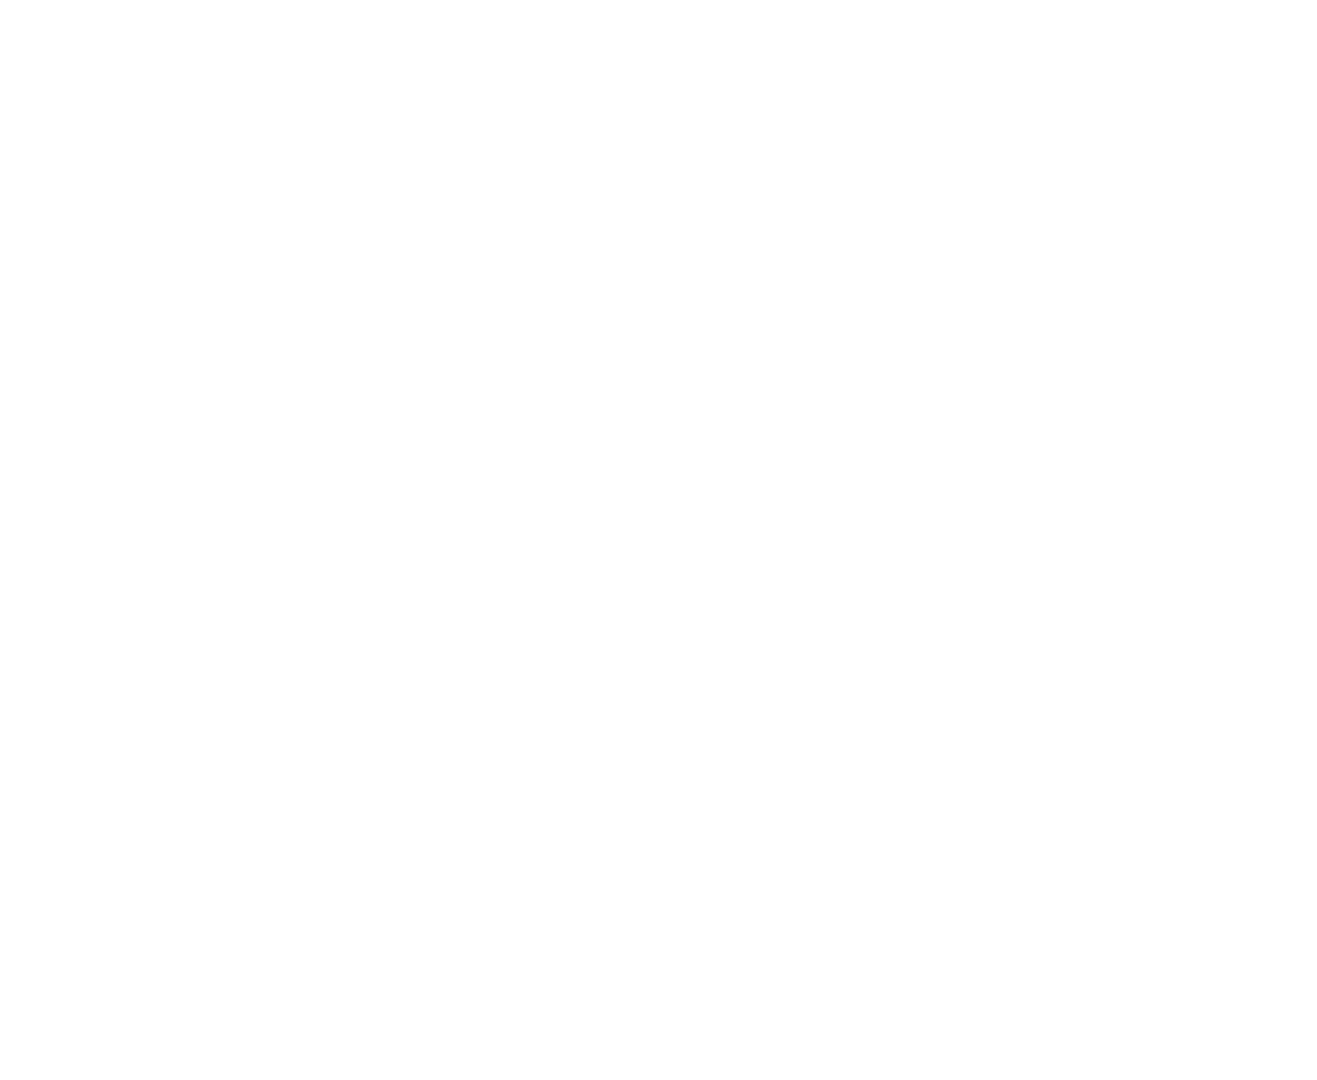 CX-59657_Sheffey's Shop_White